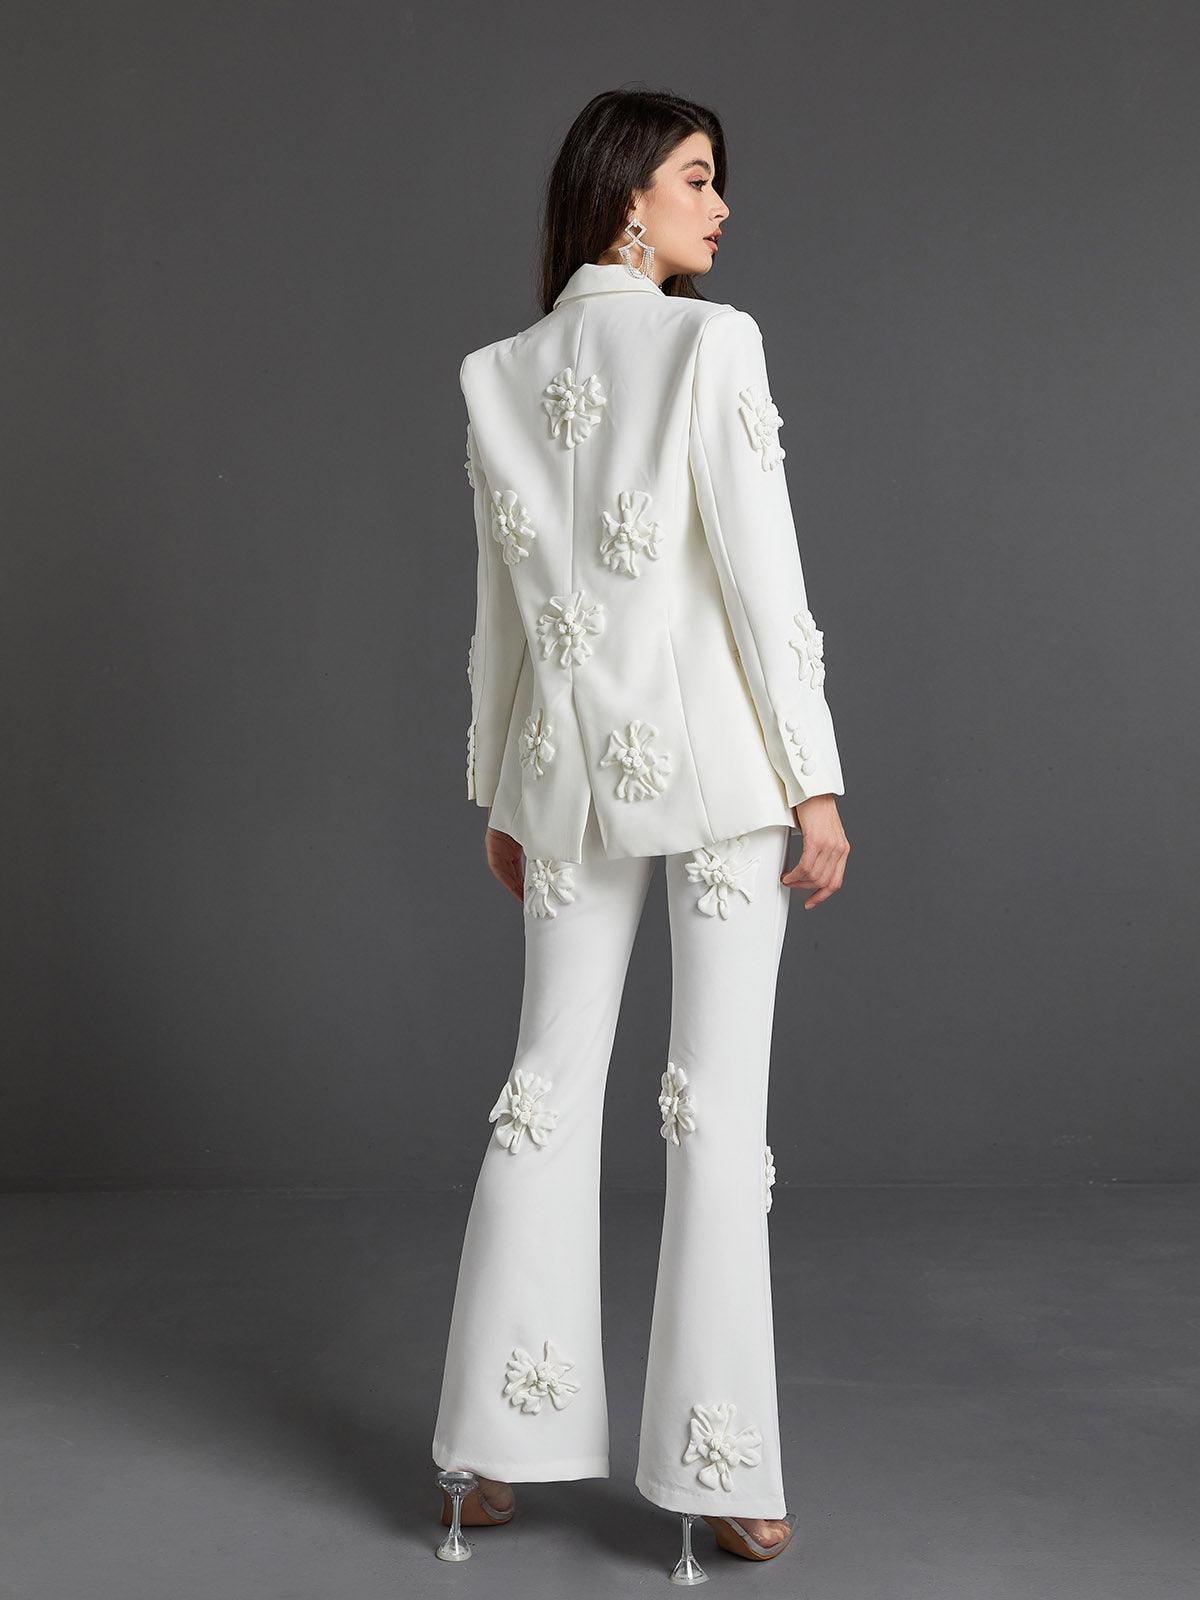 Indiana Floral Embellished Blazer Set In White